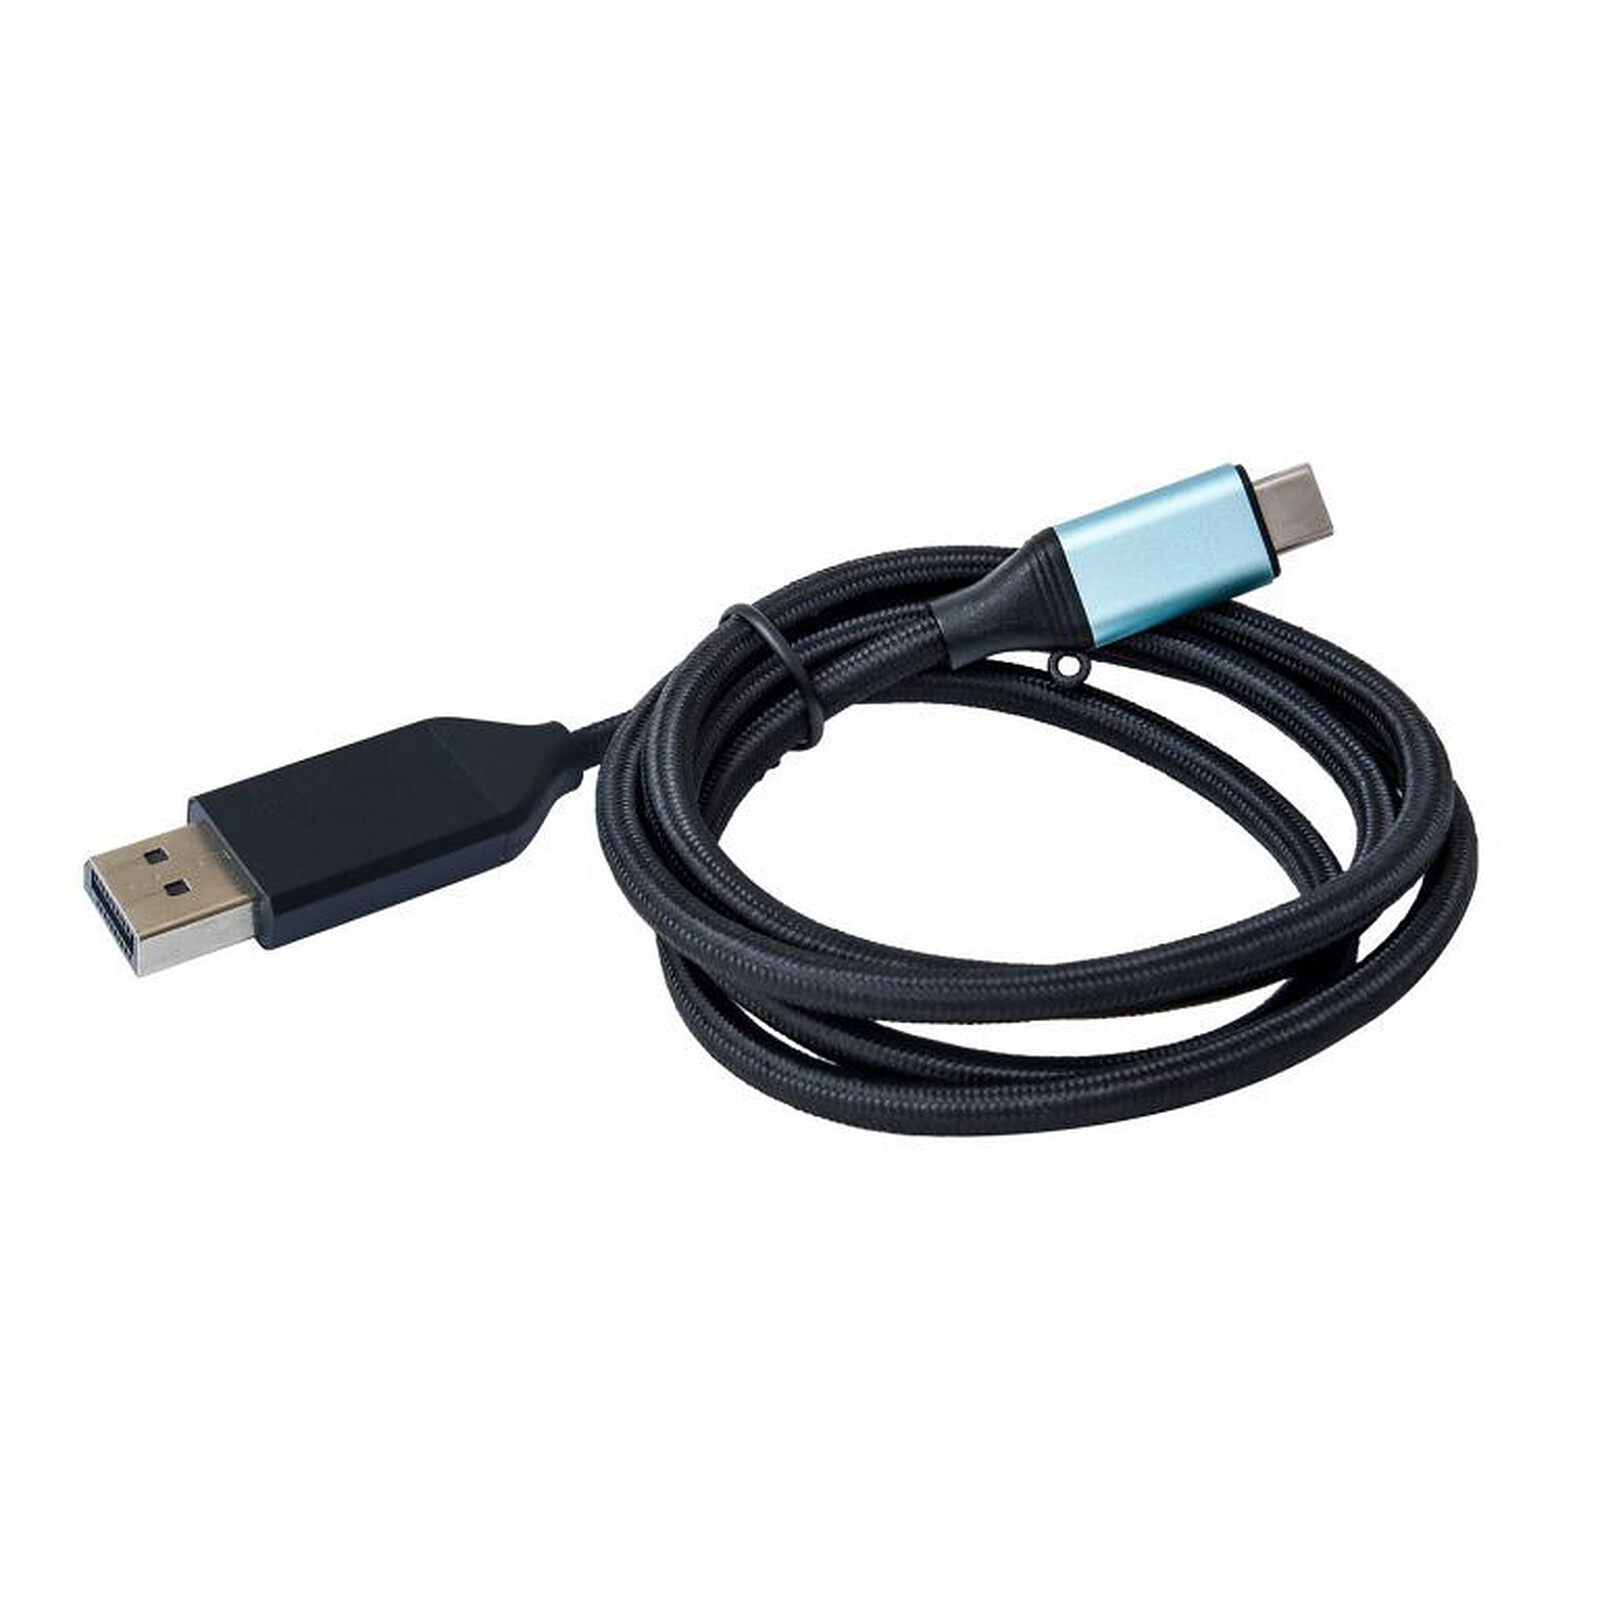 i-tec USB-C 3.1 Dual 4K DP Video Adapter - USB - Garantie 3 ans LDLC